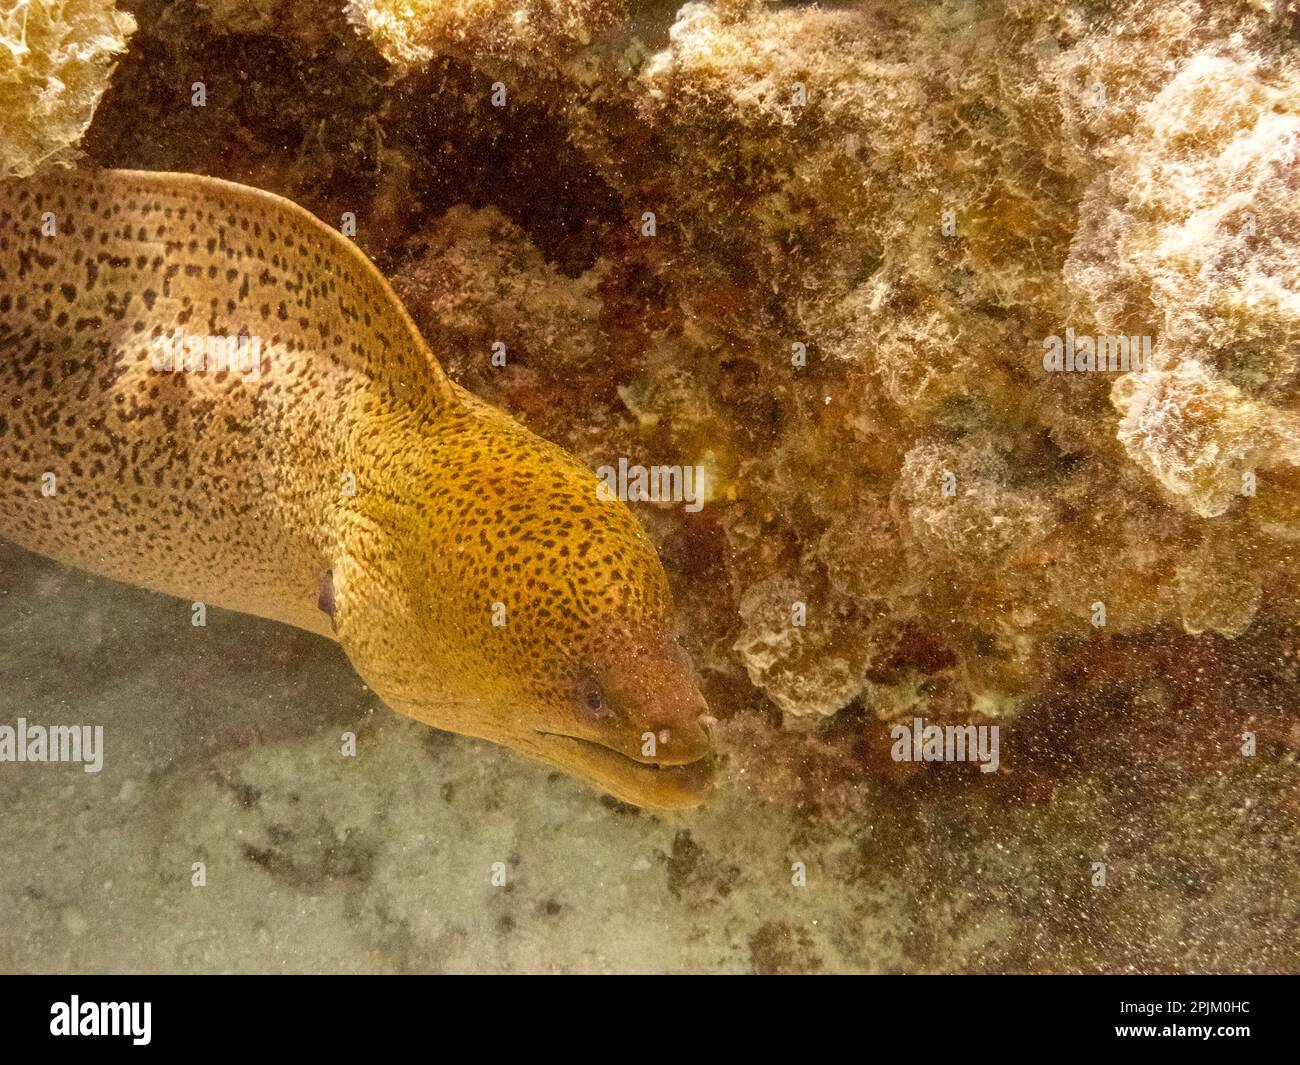 French Polynesia, Moorea. Moray eel close-up. Stock Photo